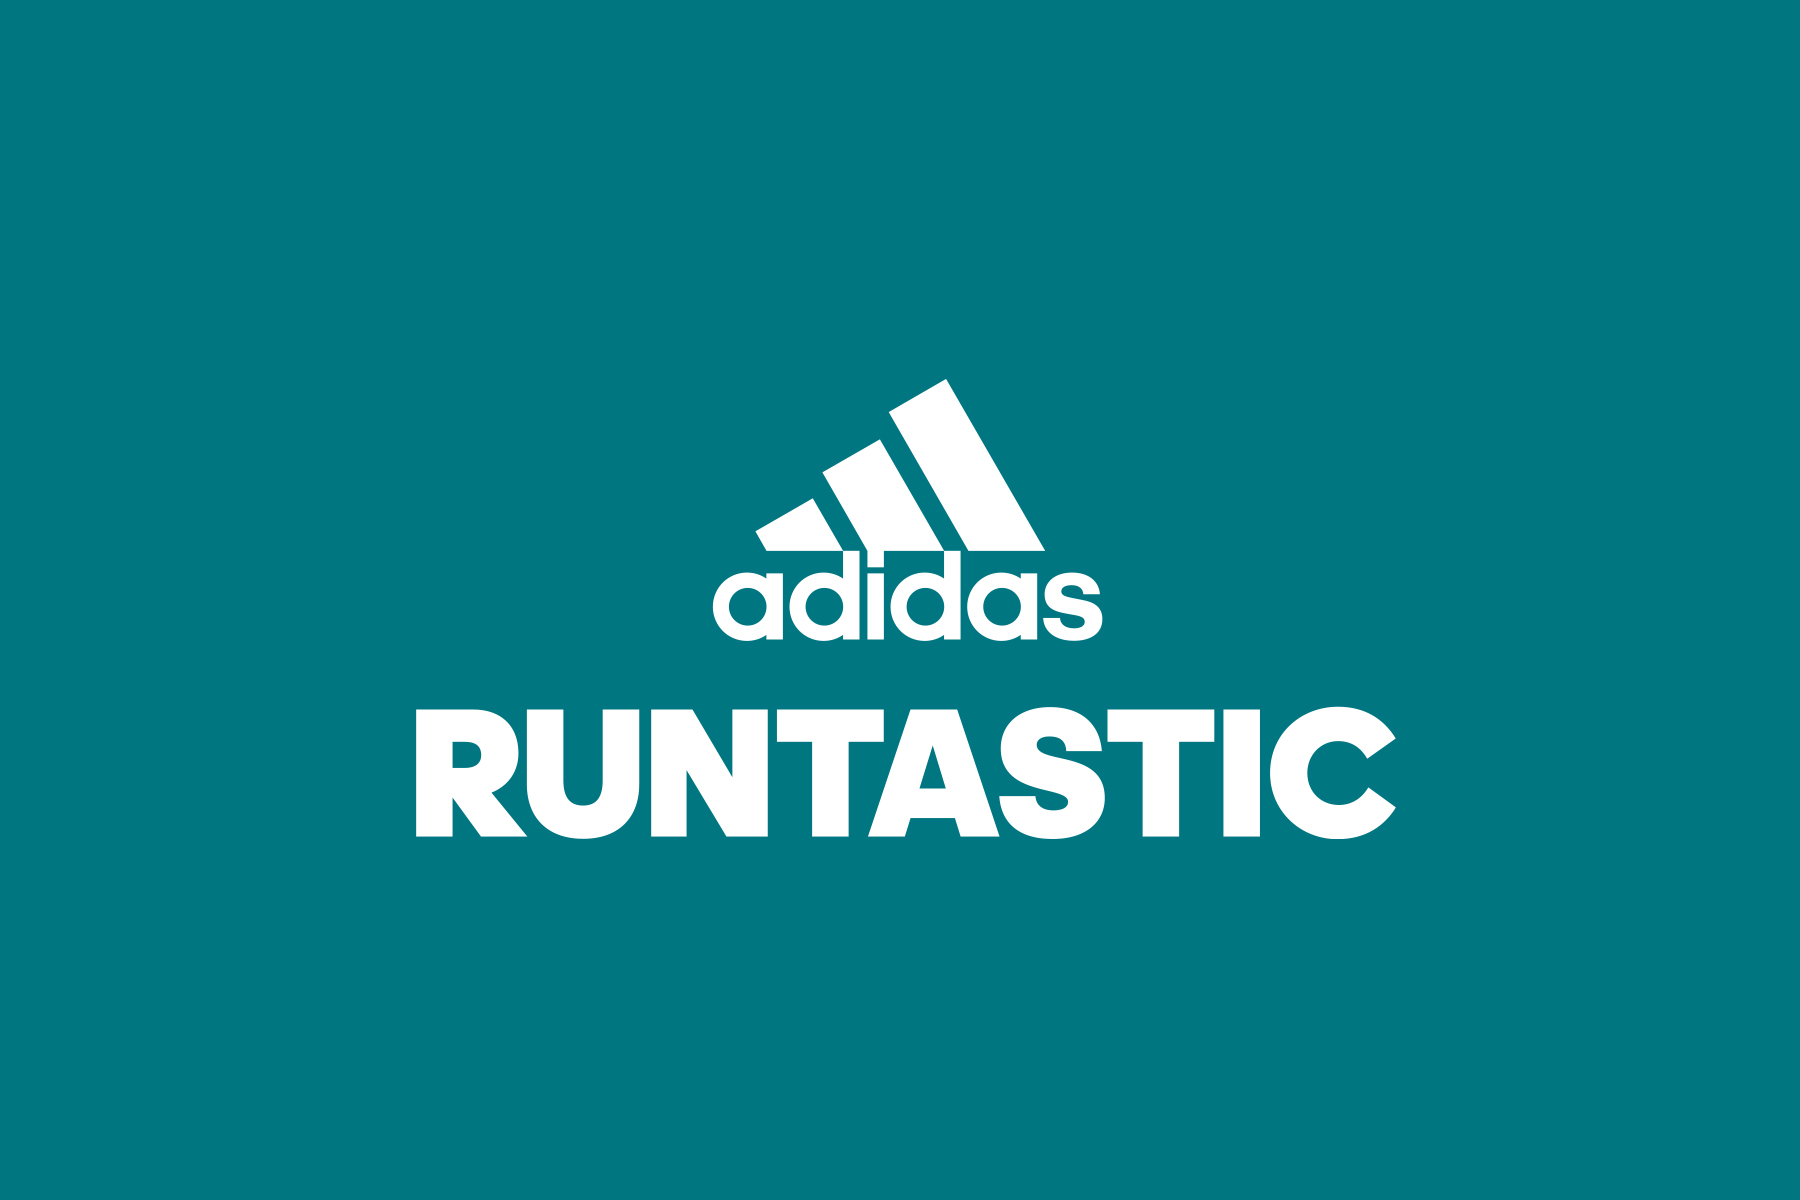 thumb_adidas-runtastic